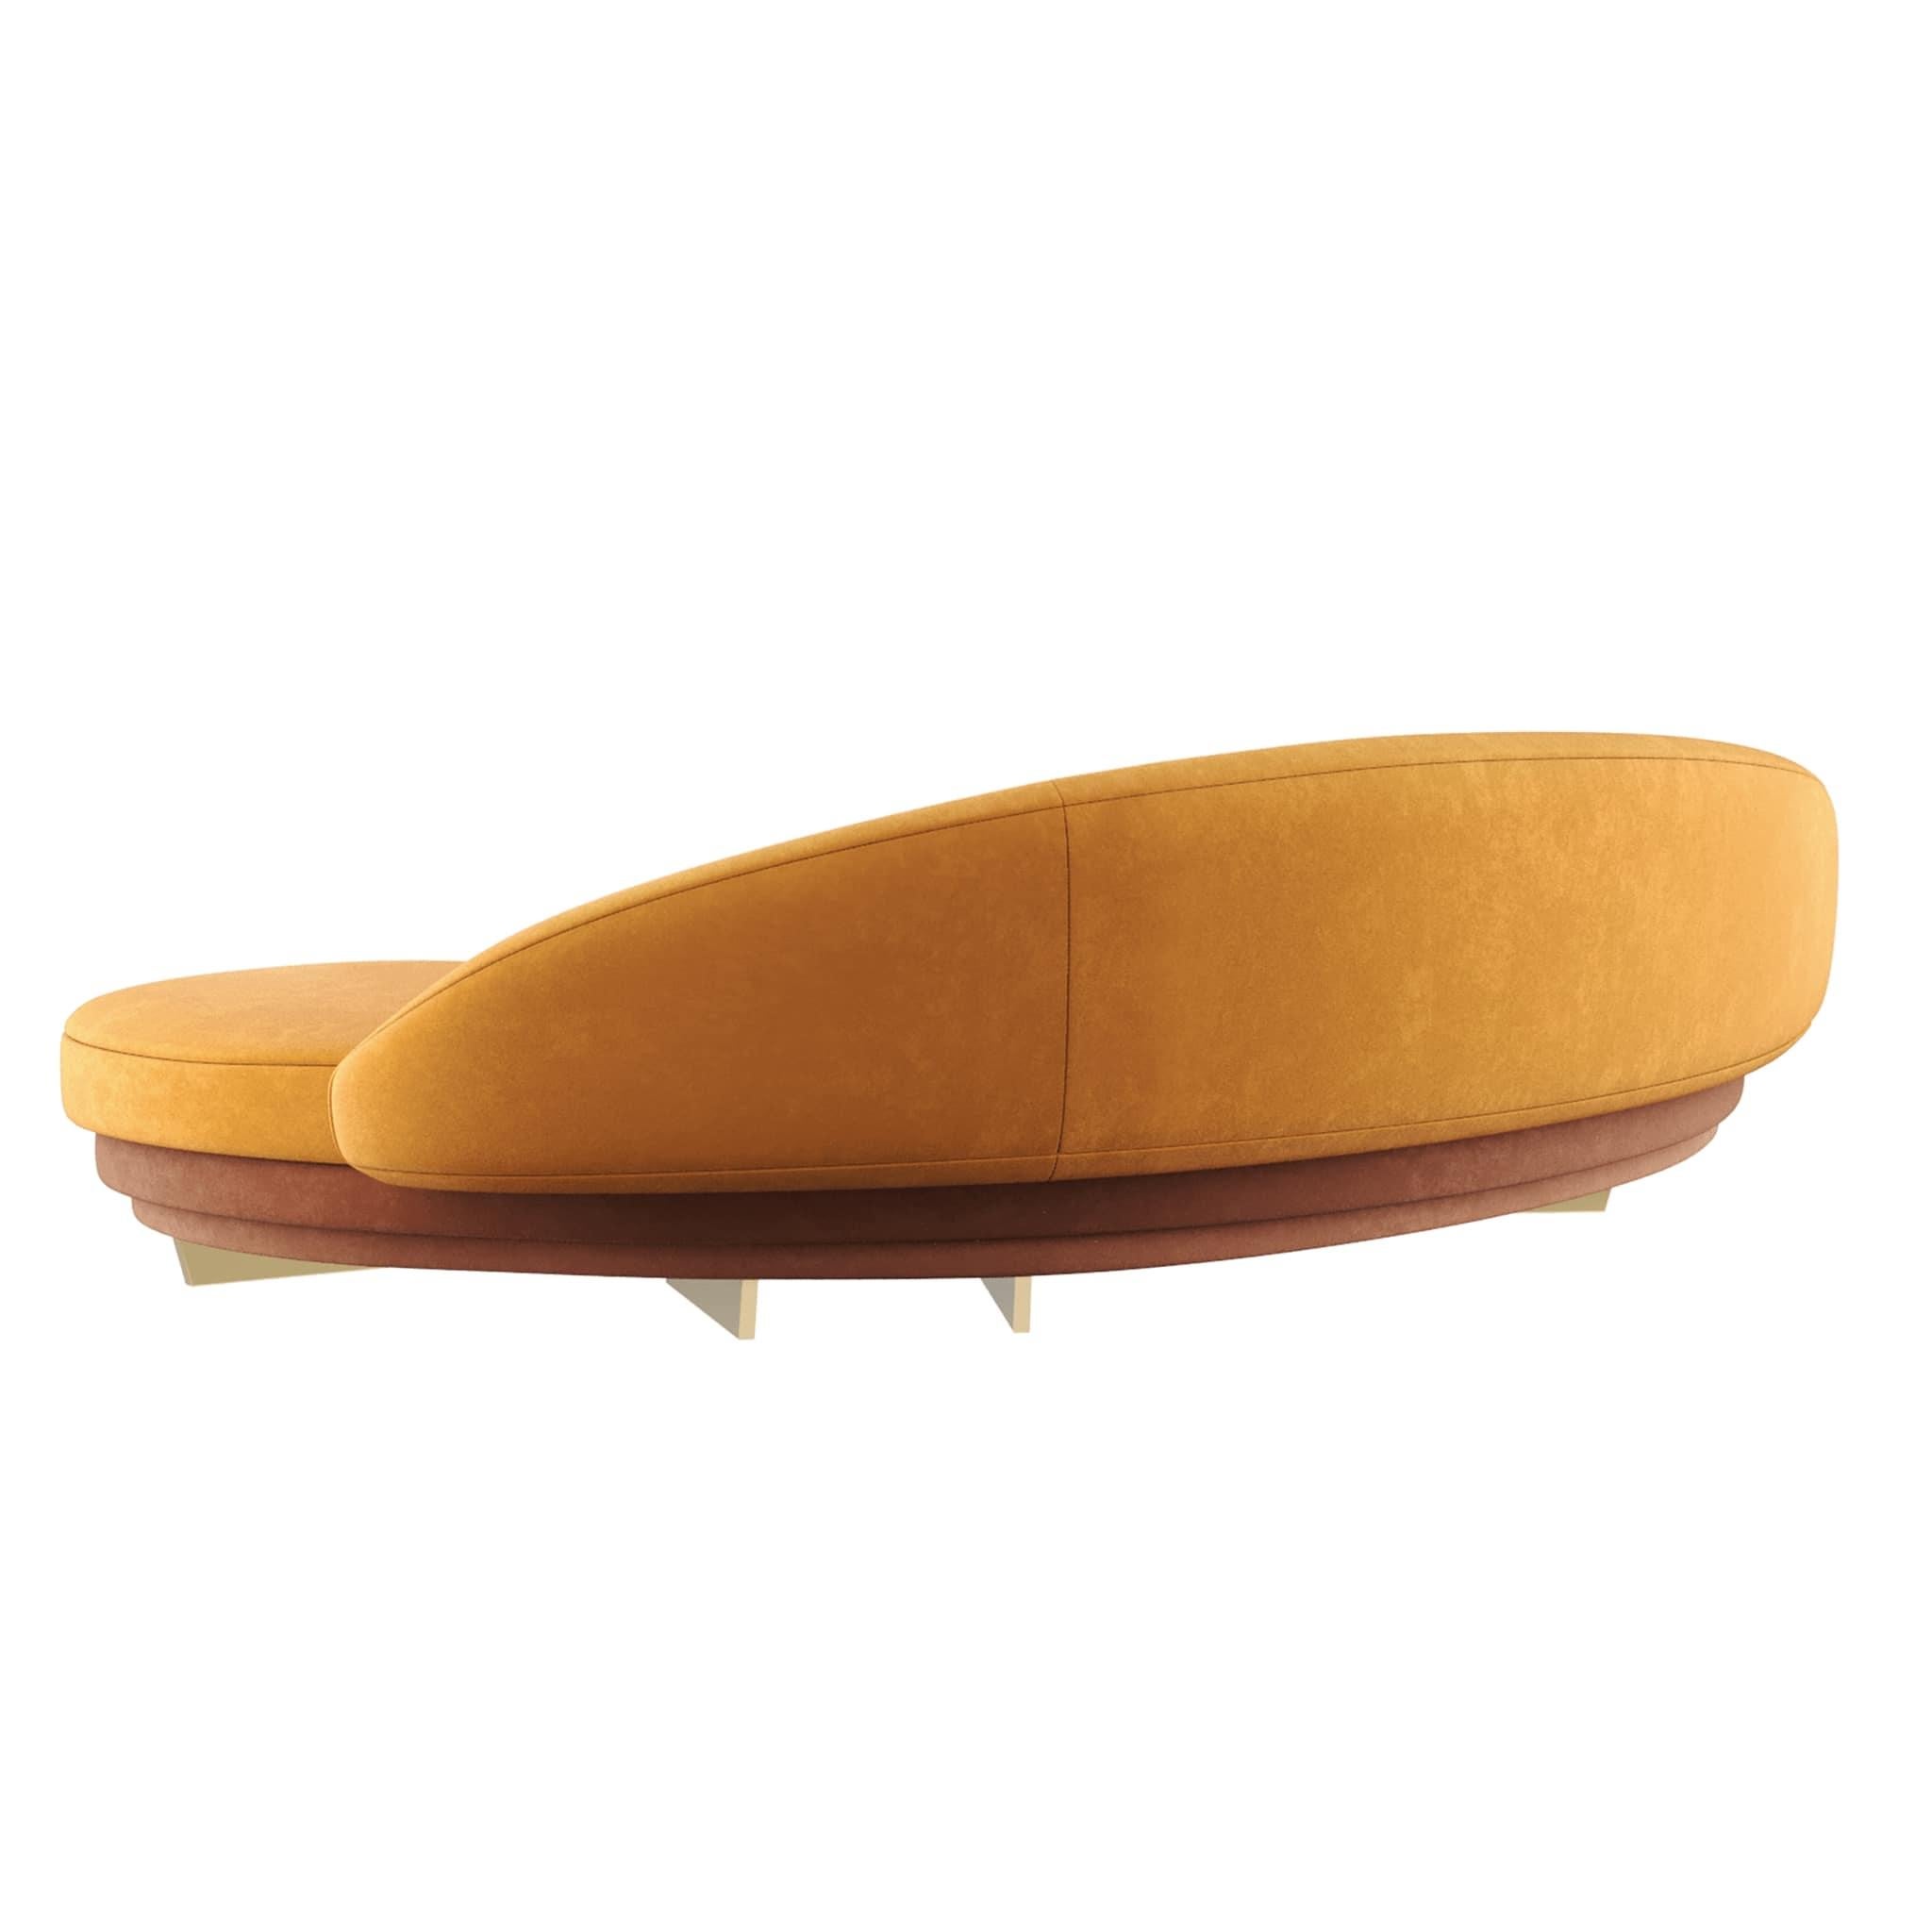 modern curved sofa